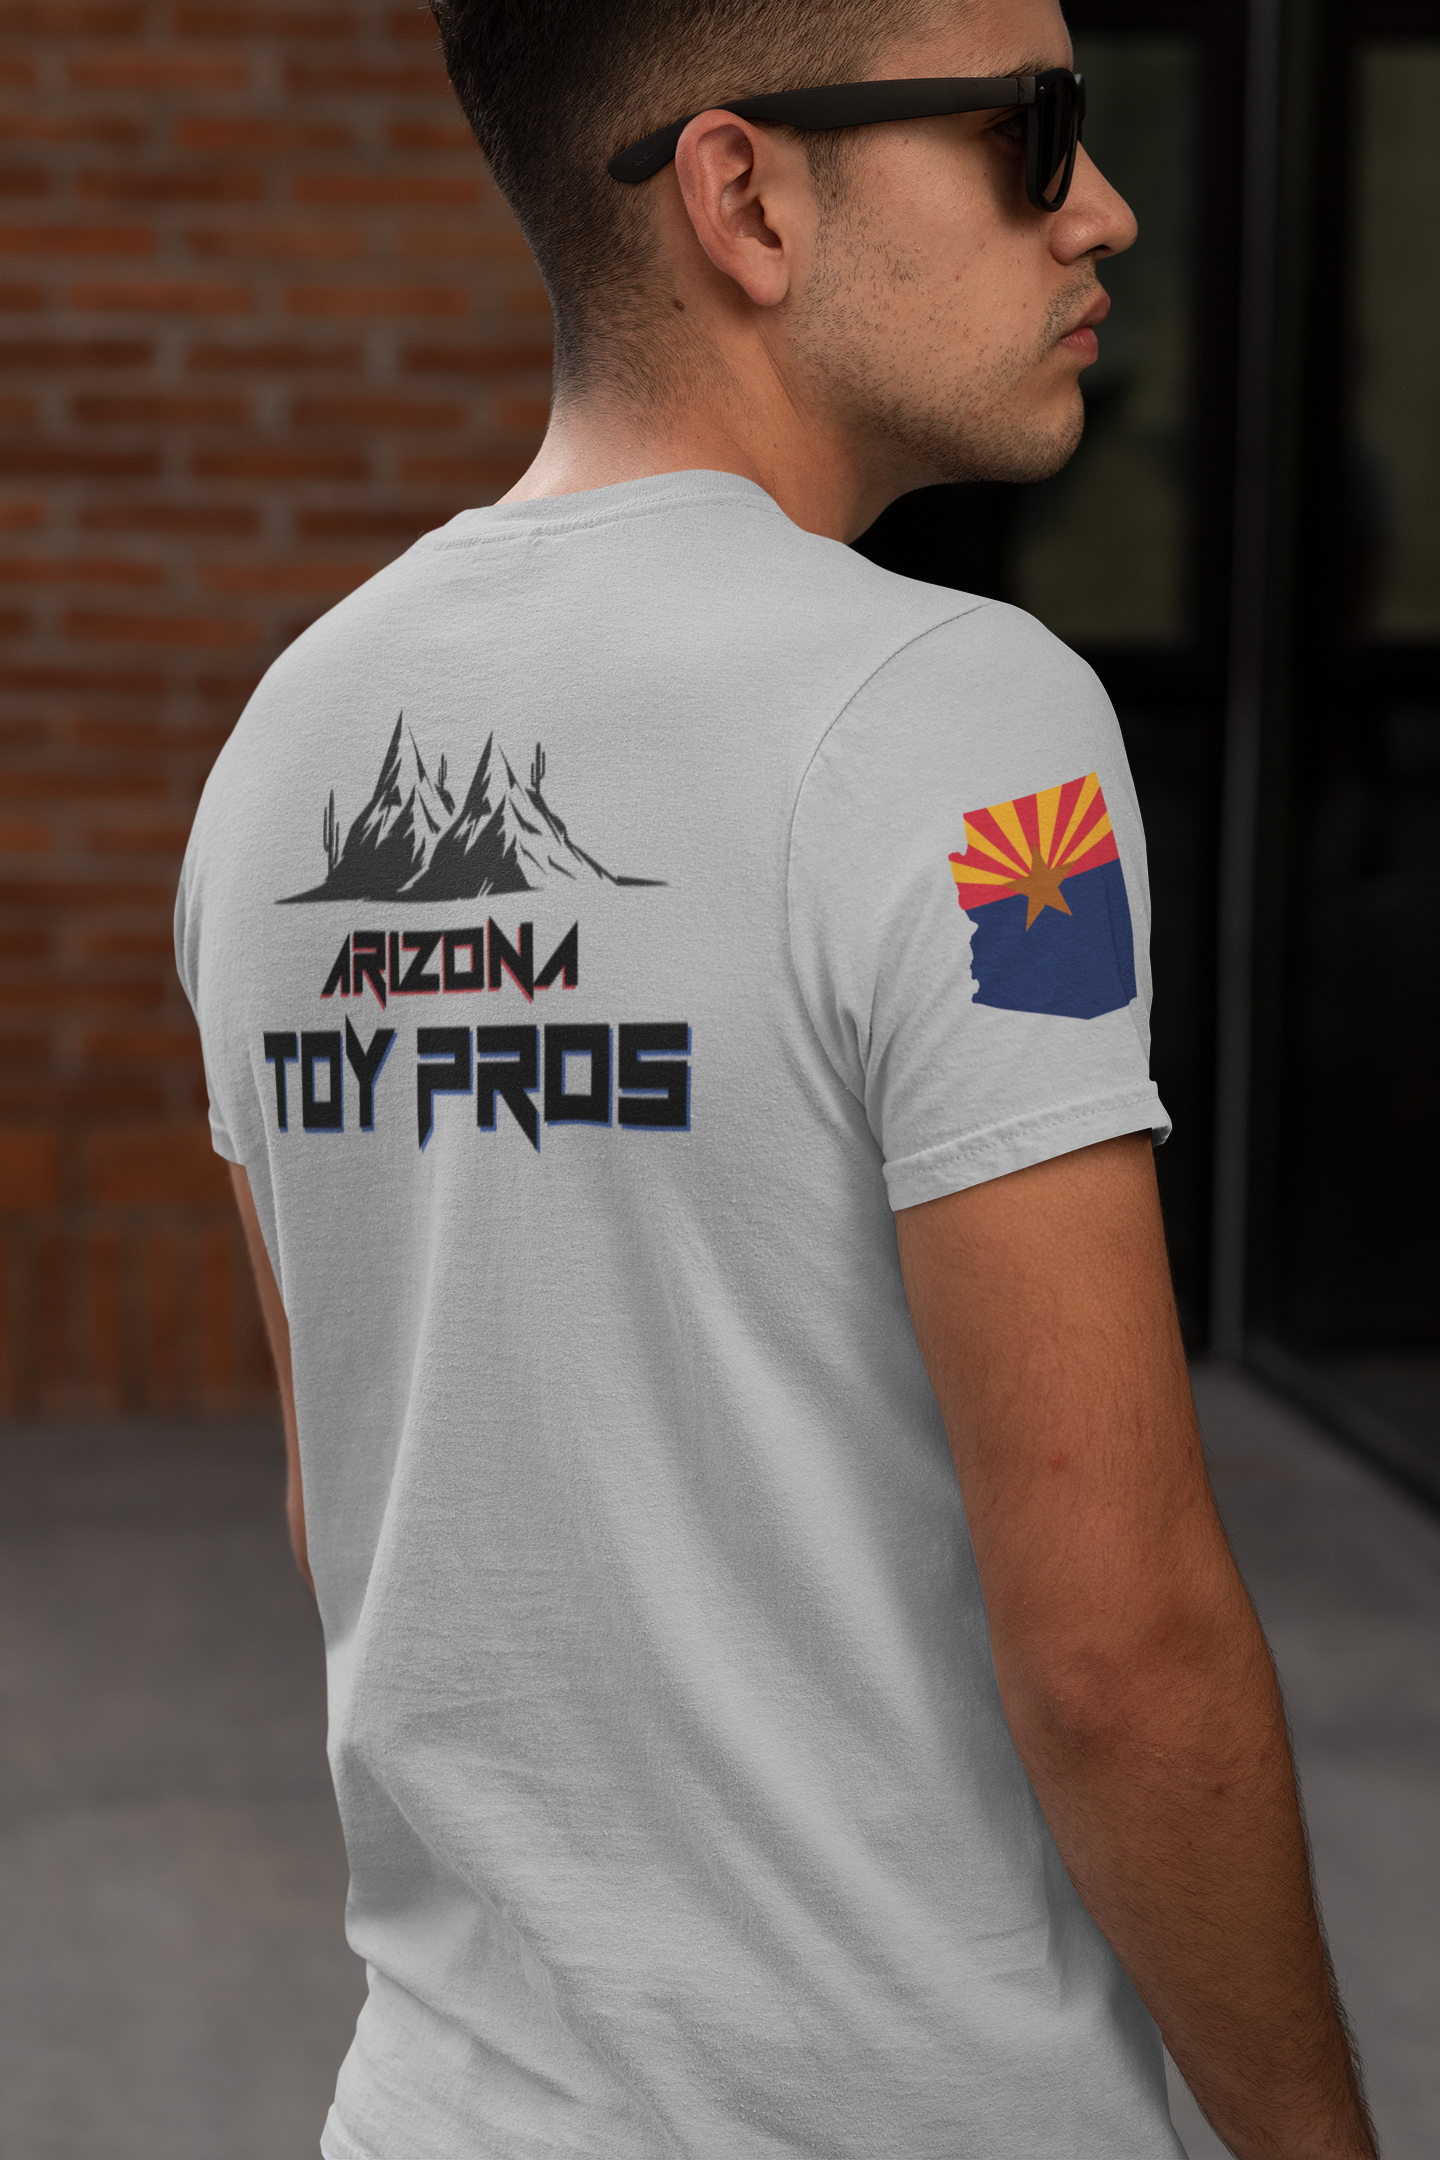 AZ Toy Pros T-shirt